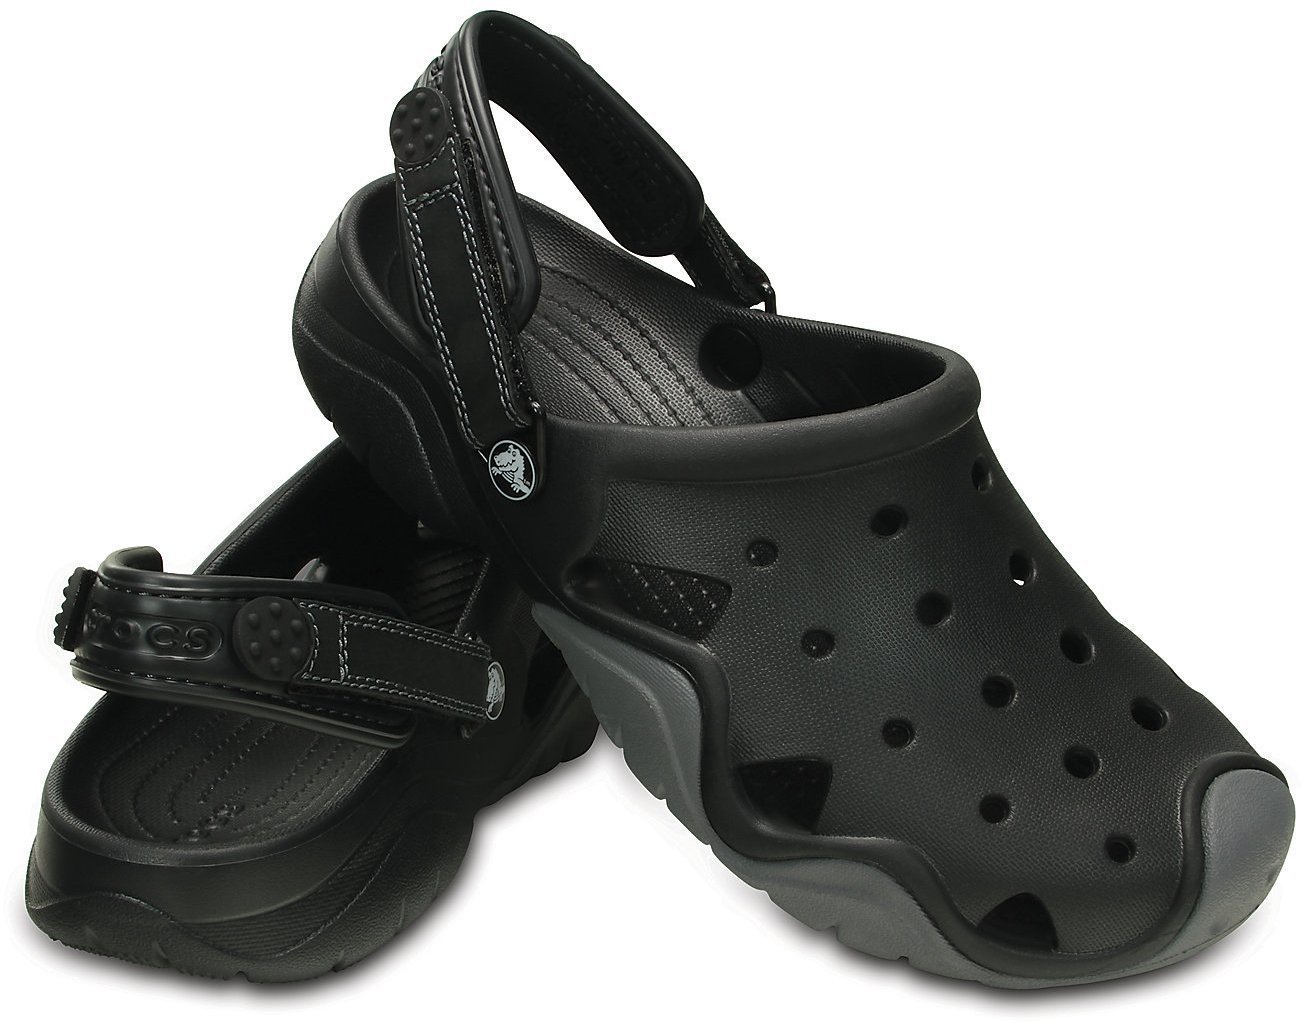 Moški čevlji Crocs Swiftwater Clog Men Black/Charcoal 43-44